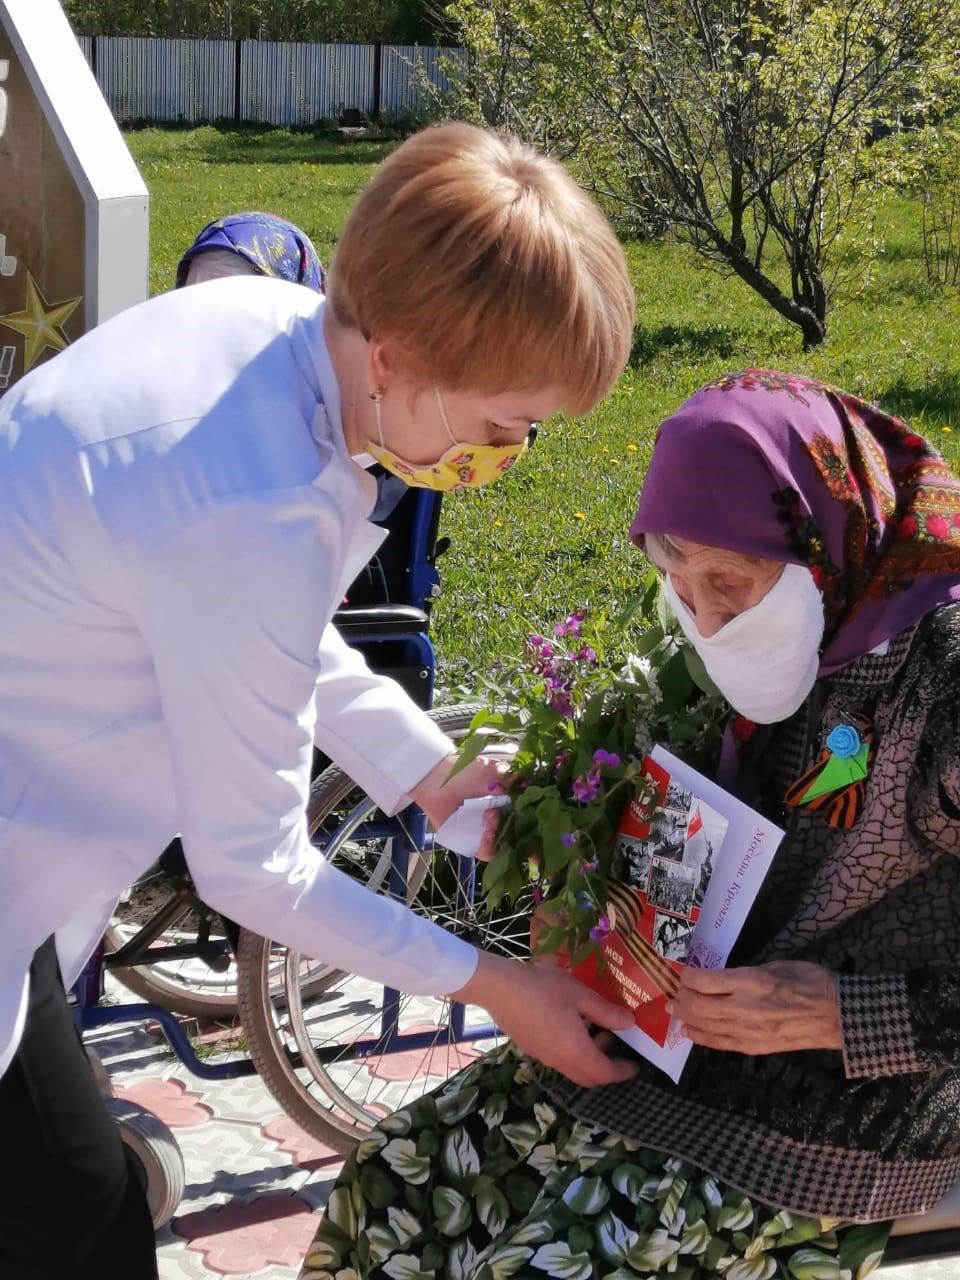 Жители Федоровского дома-интерната Аксубаевского района почтили память героев войны